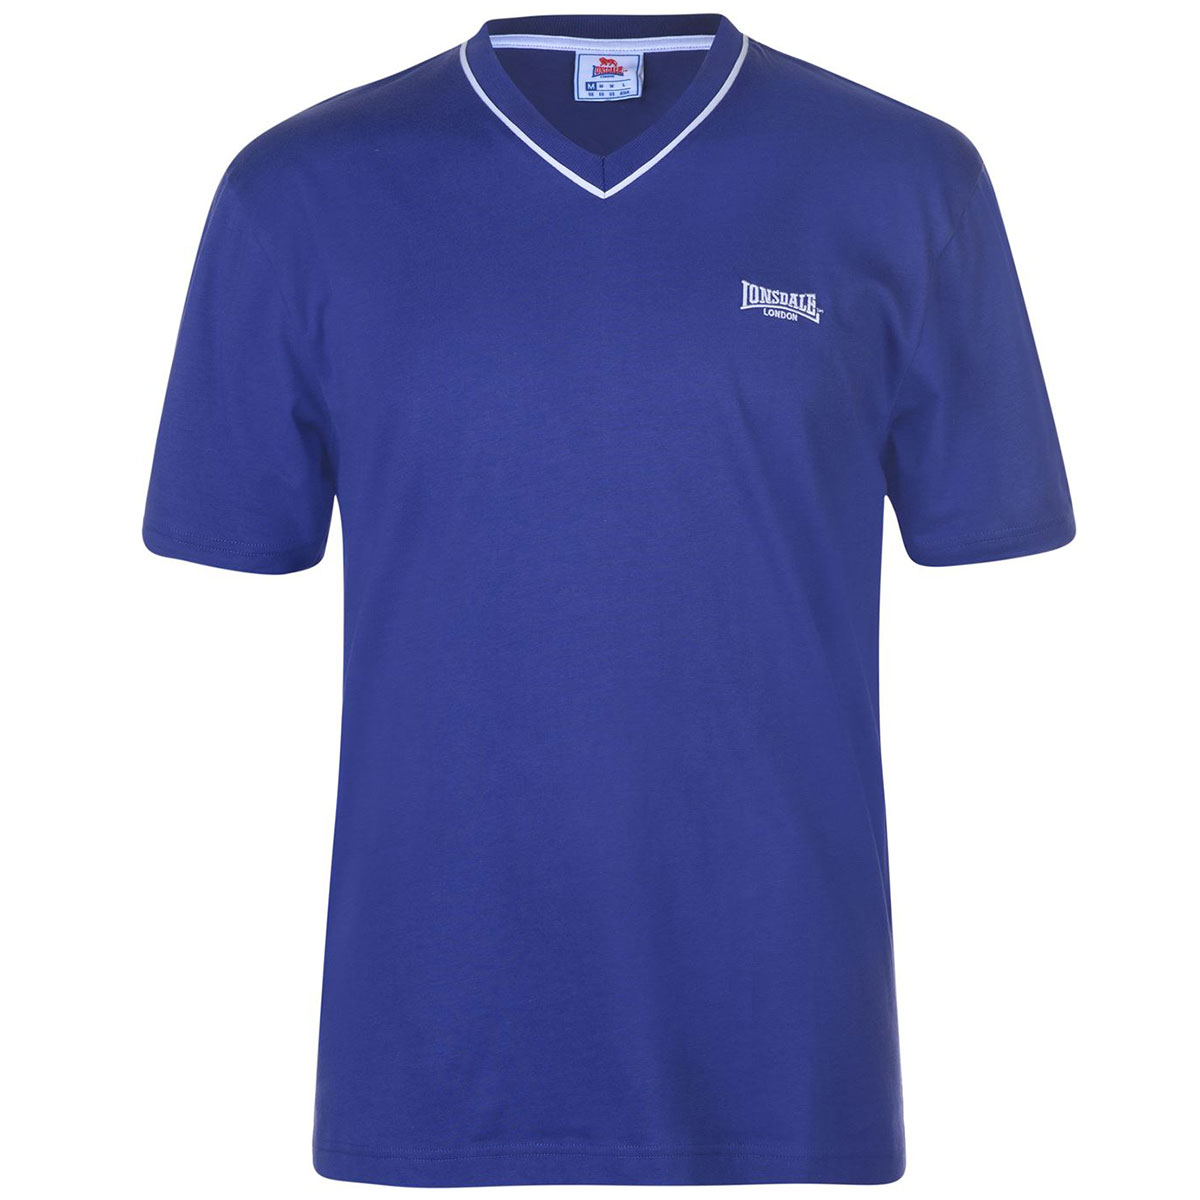 Lonsdale Men's Short-Sleeve V Neck Tee - Blue, XL